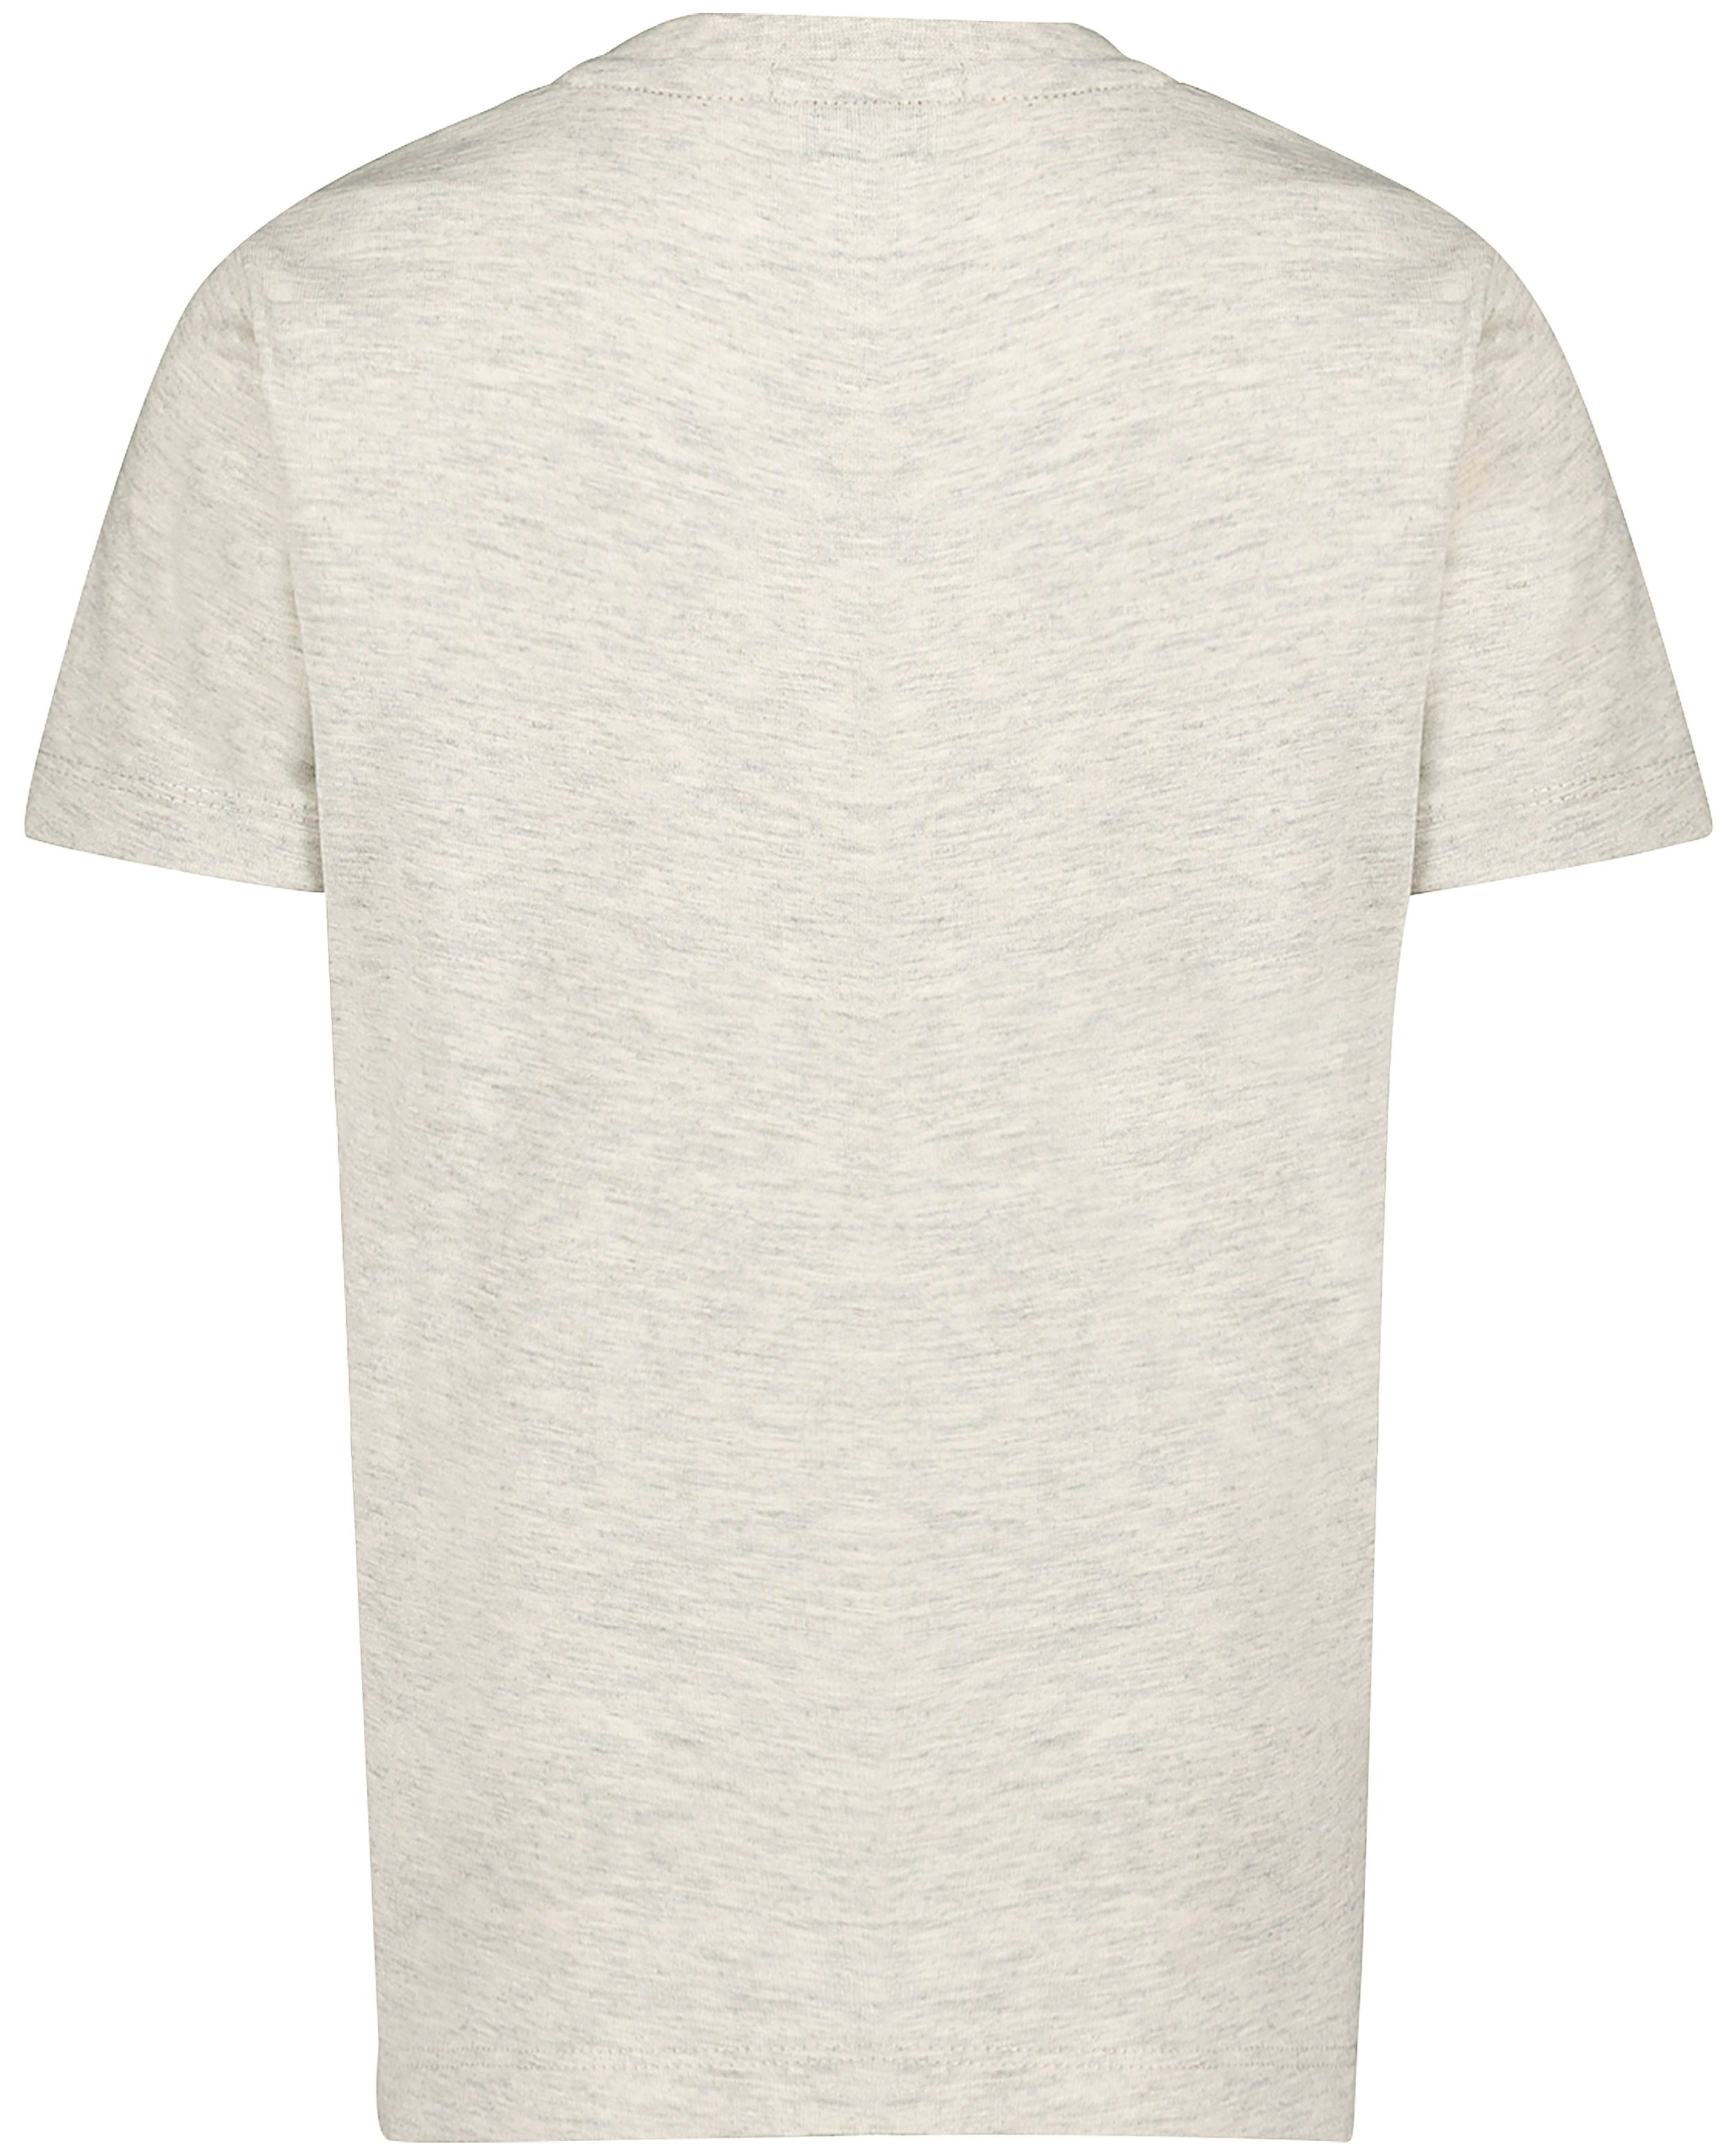 T-shirts - T-shirt gris, imprimé de frites (NL)